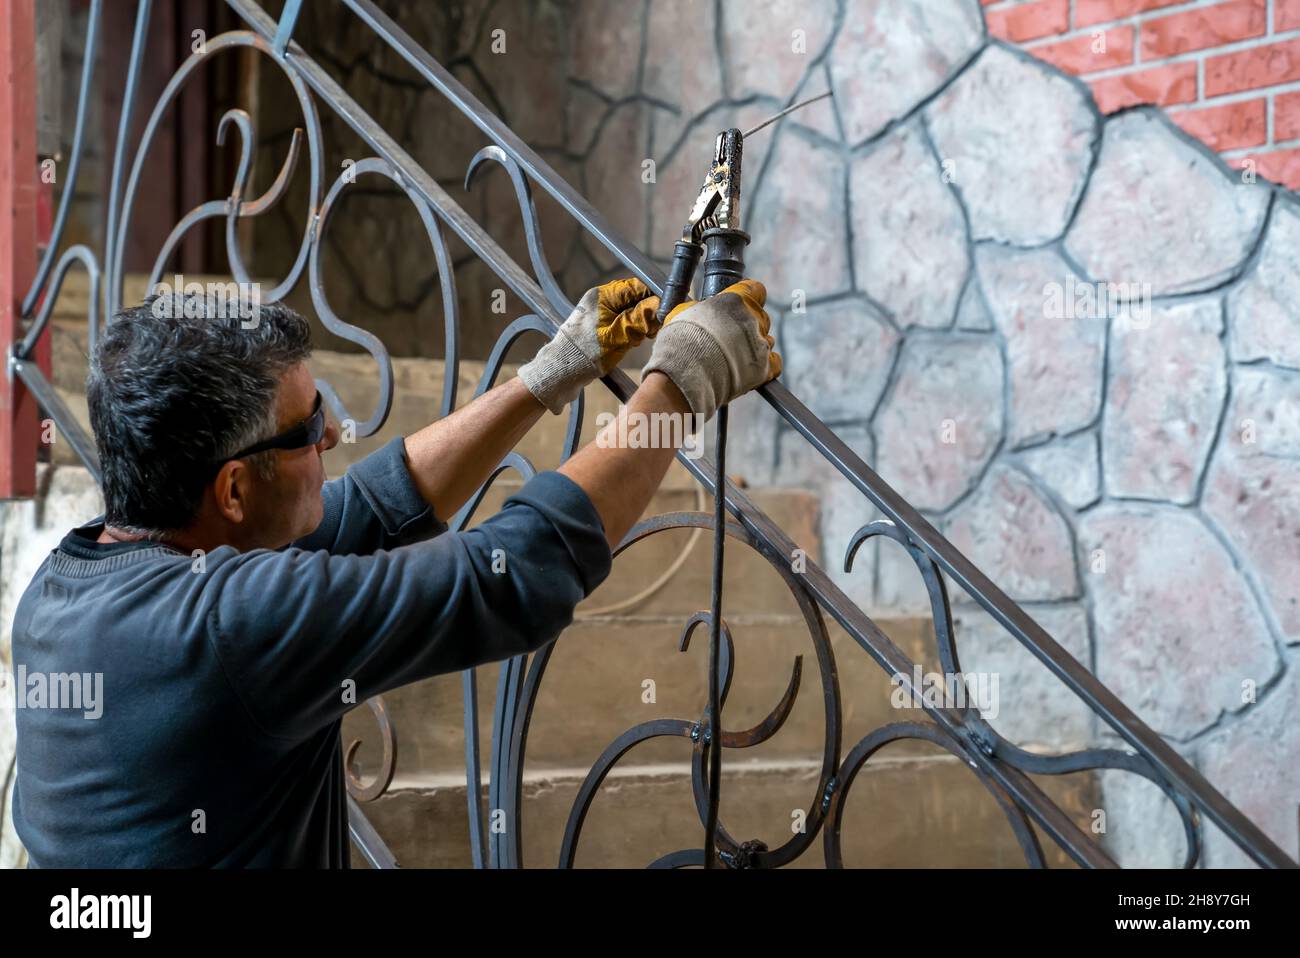 L'homme tient la machine à souder en main, se prépare à commencer le travail de soudage de pièces métalliques à la main courante d'escalier dans une maison privée. Banque D'Images